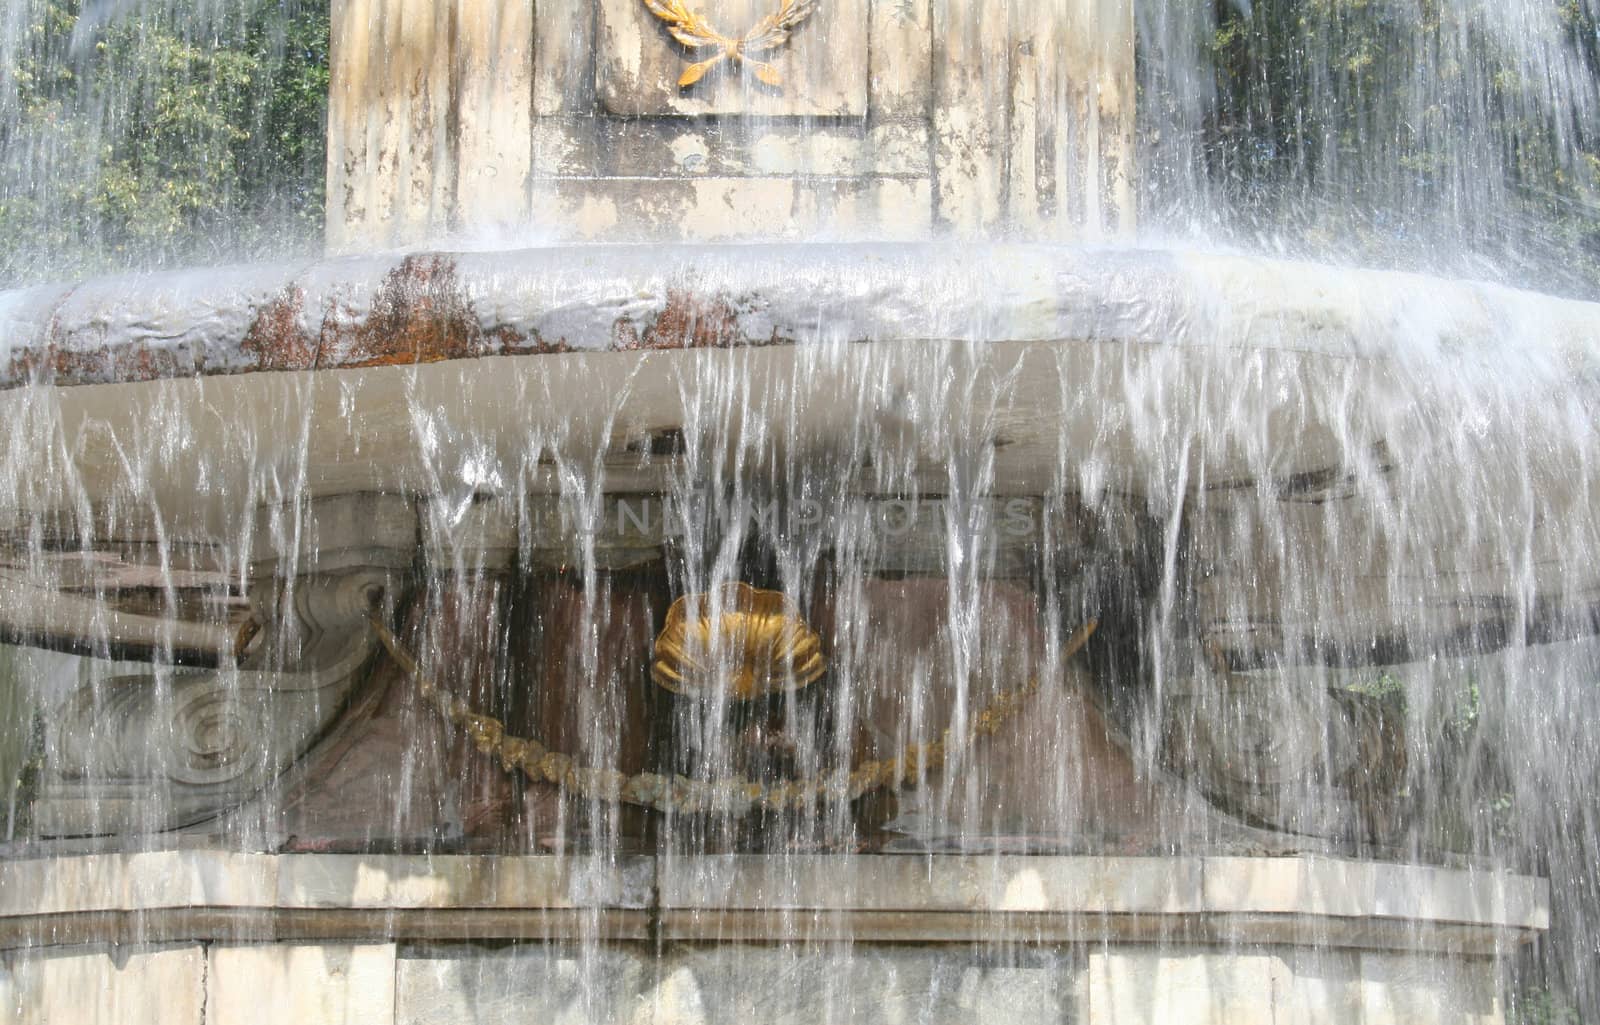 fountain by foaloce